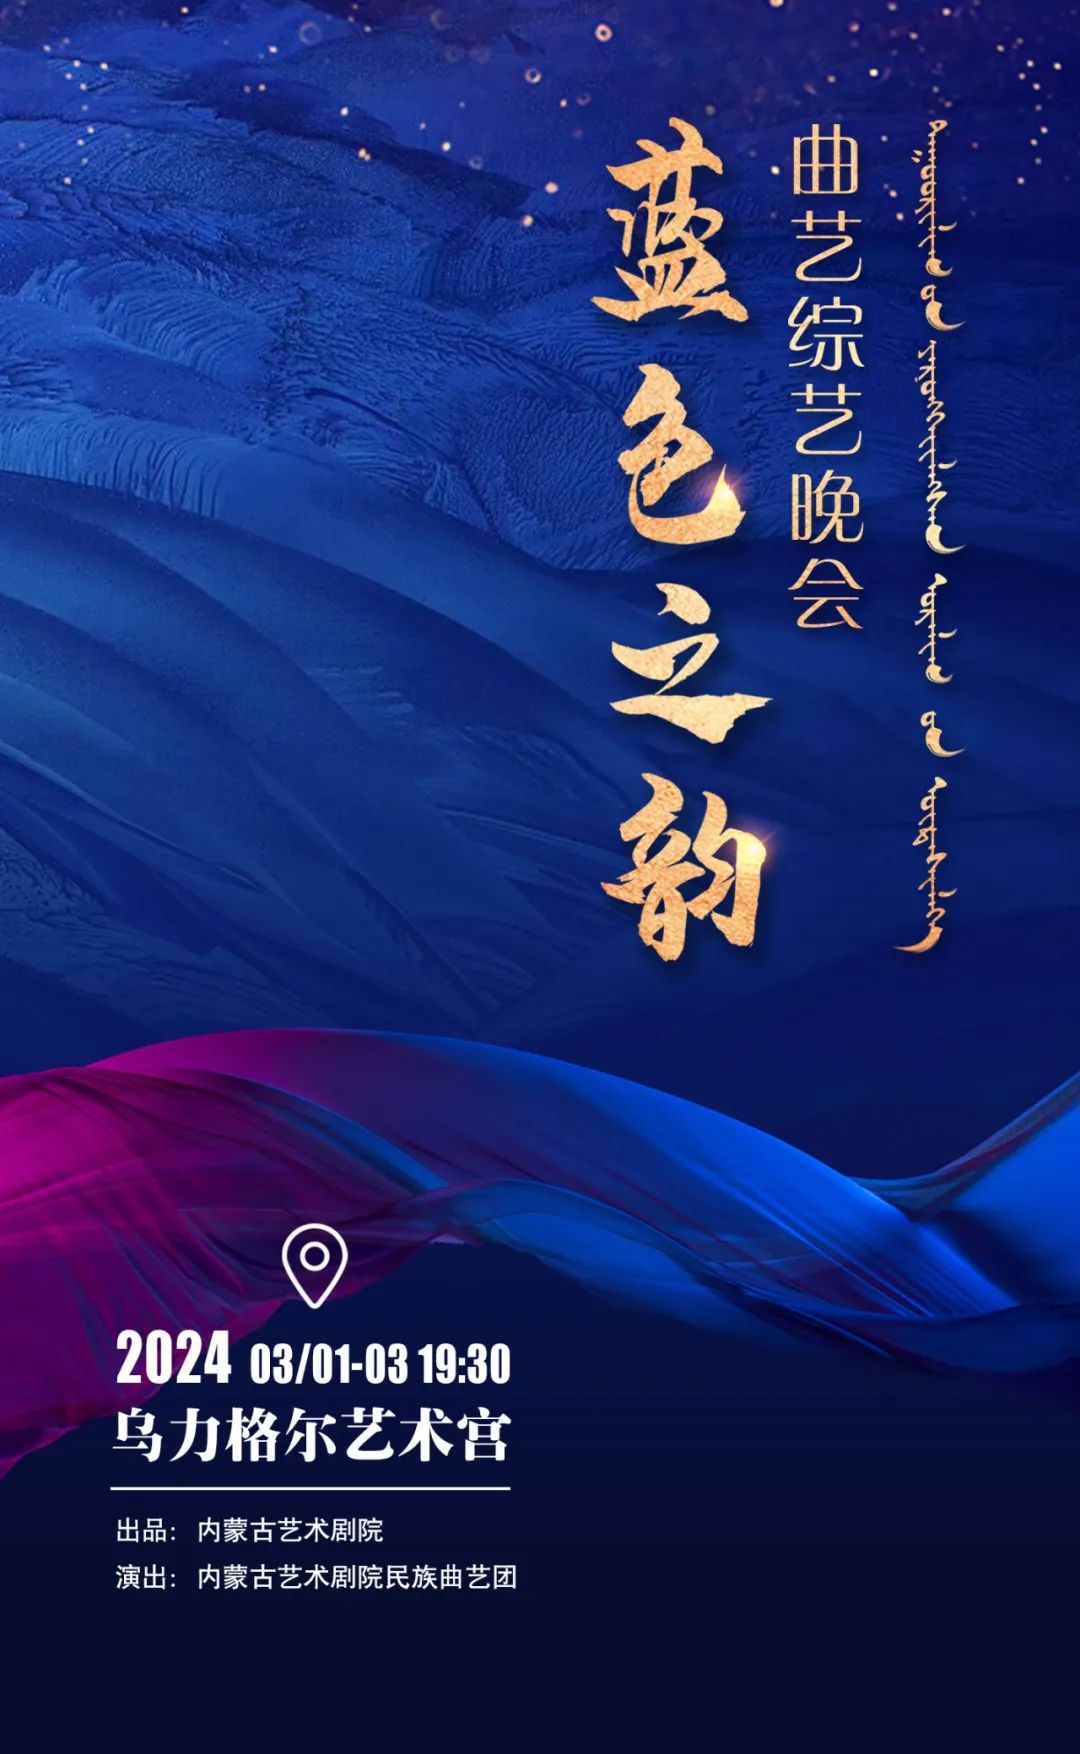 标题：【开票】民族曲艺综艺晚会《蓝色之韵》，将内蒙古民风民俗氛围感拉满！
点击数：188
发表时间：2024-03-01